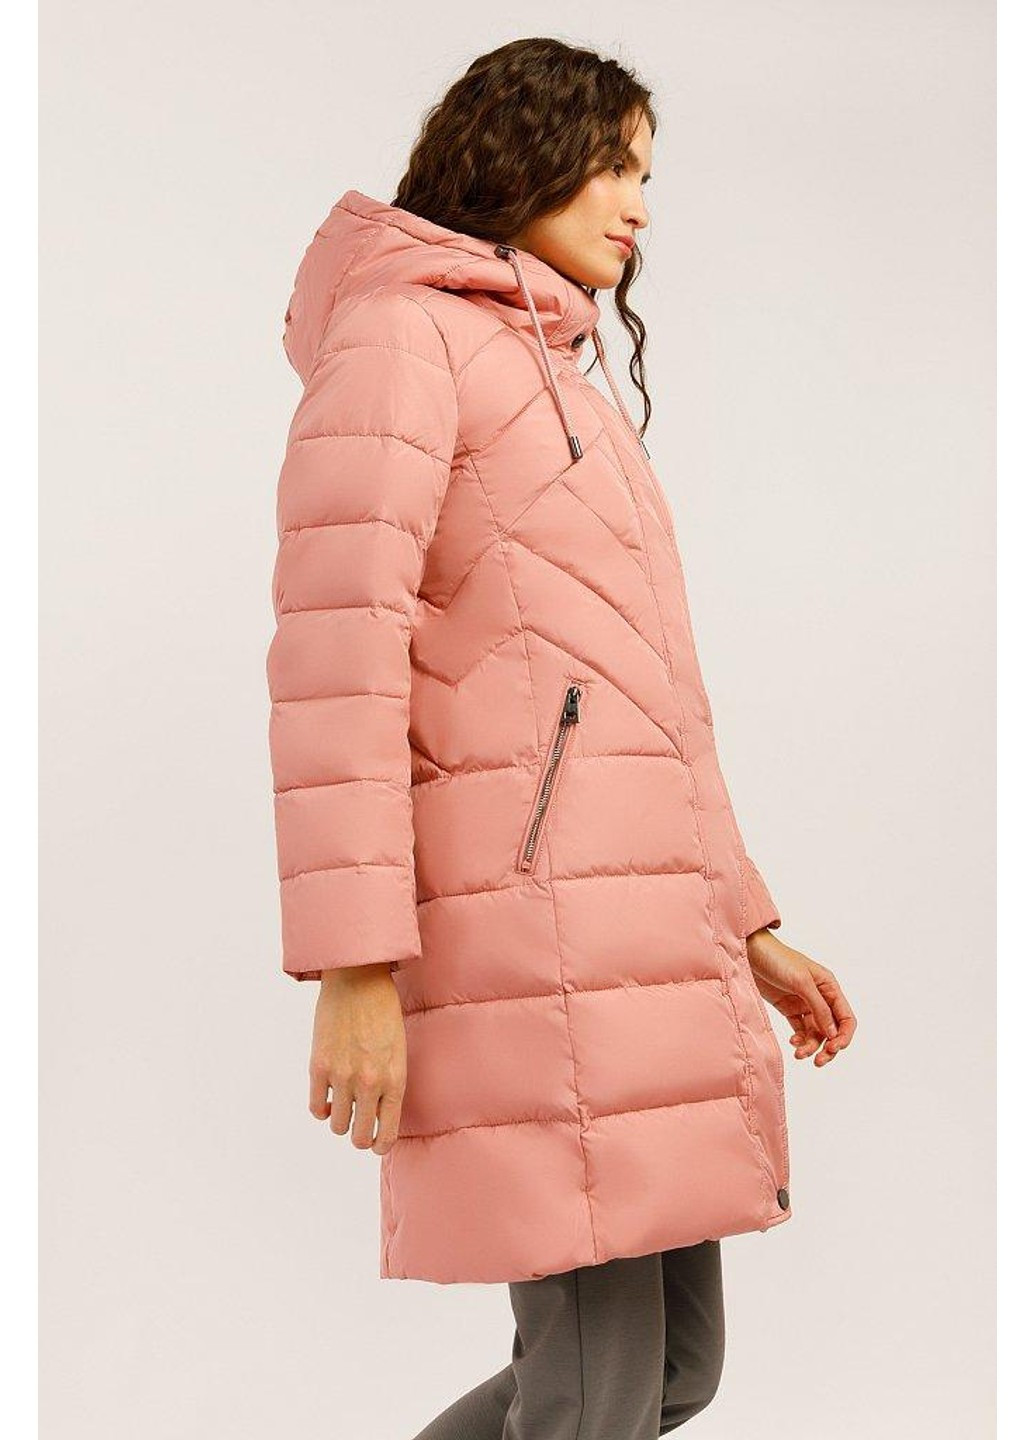 Розовая зимняя зимняя куртка w19-11004-338 Finn Flare